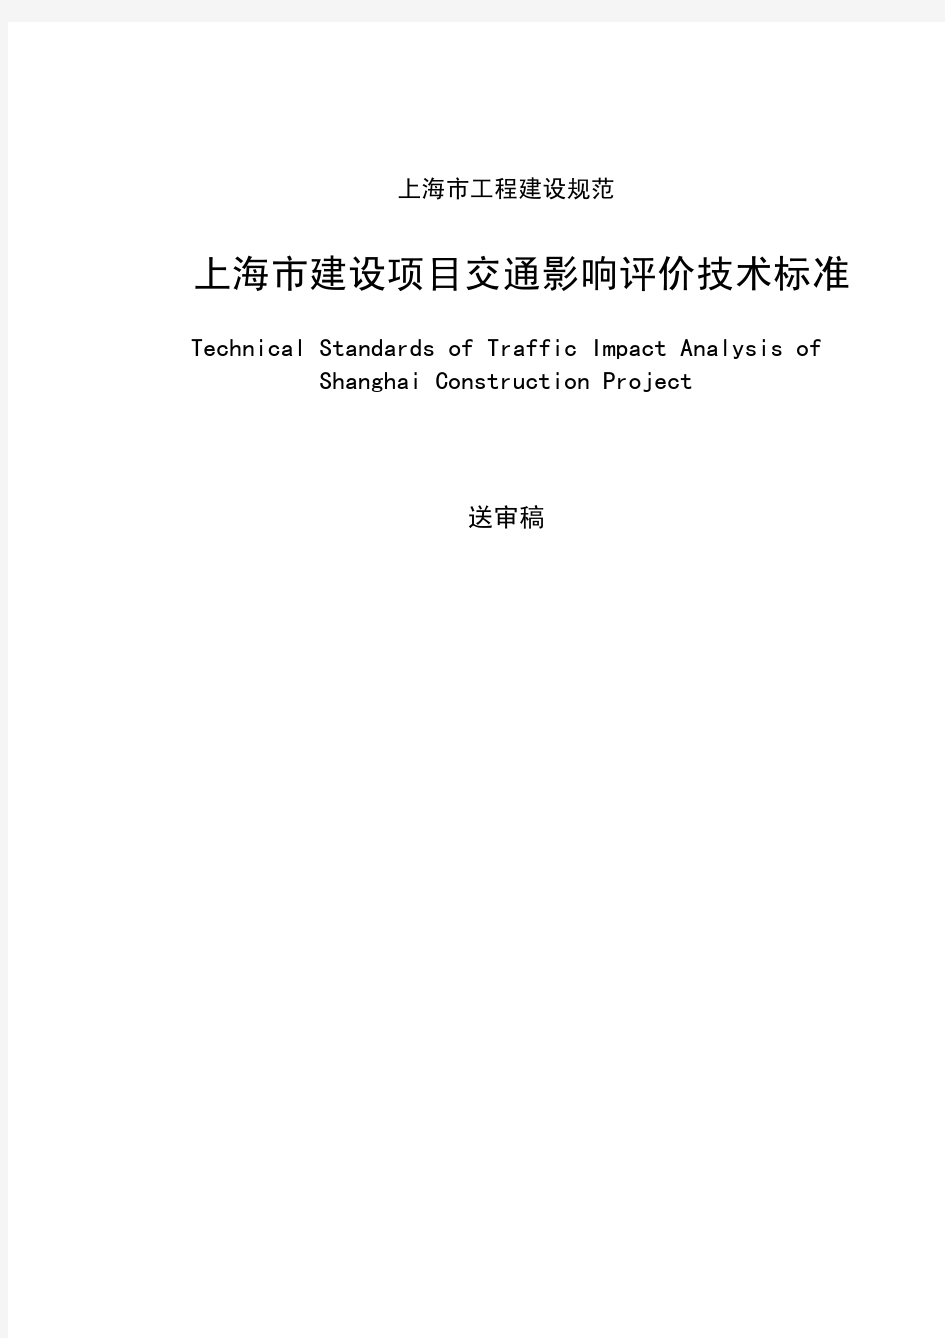 上海市建设项目交通影响评价技术标准